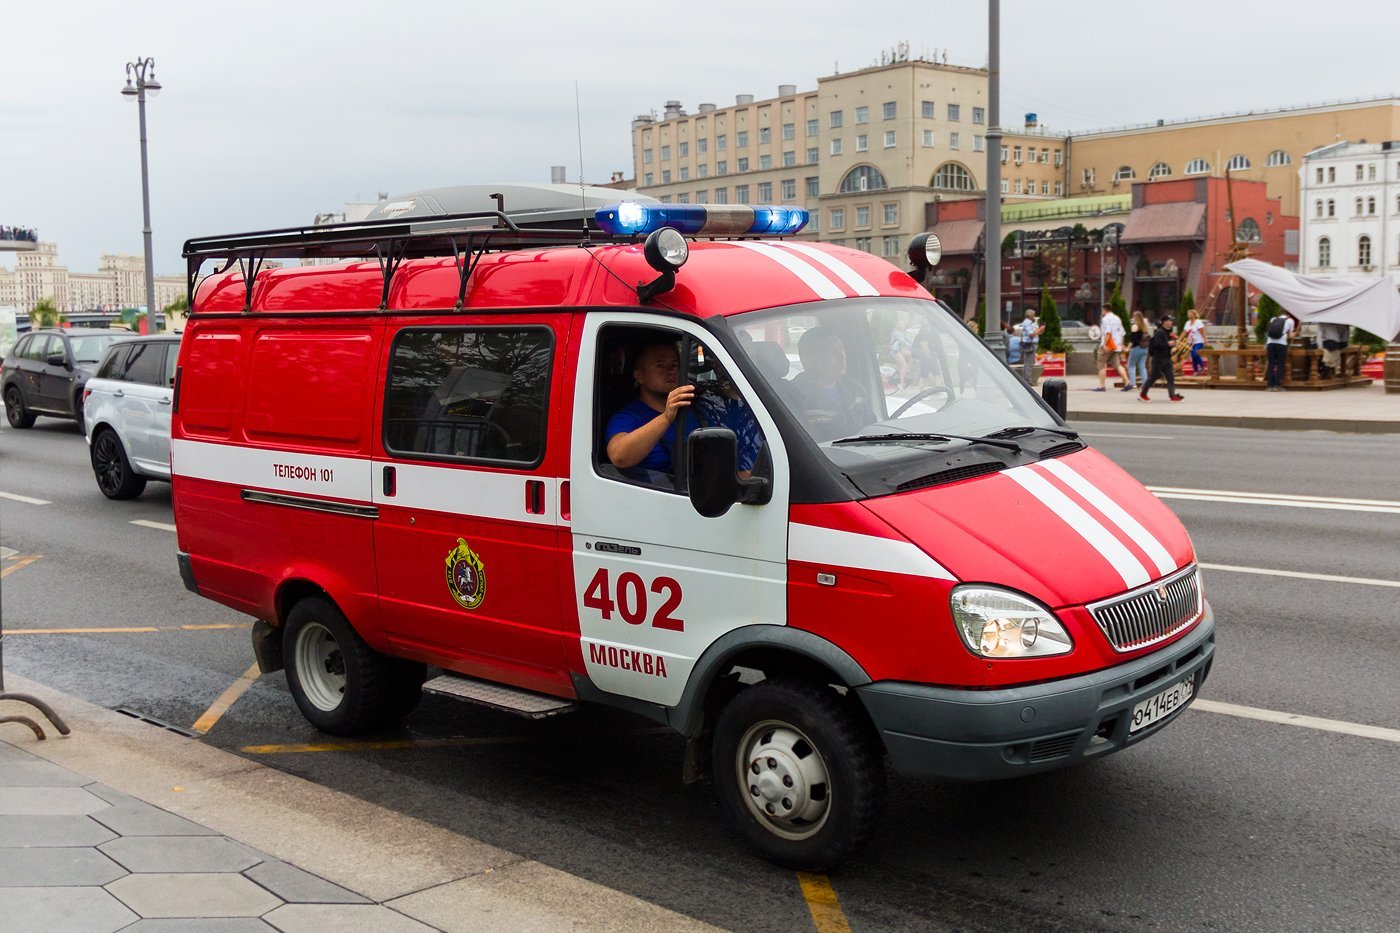 Пожарные автомобили специального назначения. ГАЗ 27057 пожарный. ГАЗ 2705 пожарная. ГАЗ 3302 пожарный. Апп-0,5-2 ГАЗ 33023 пожарная техника.